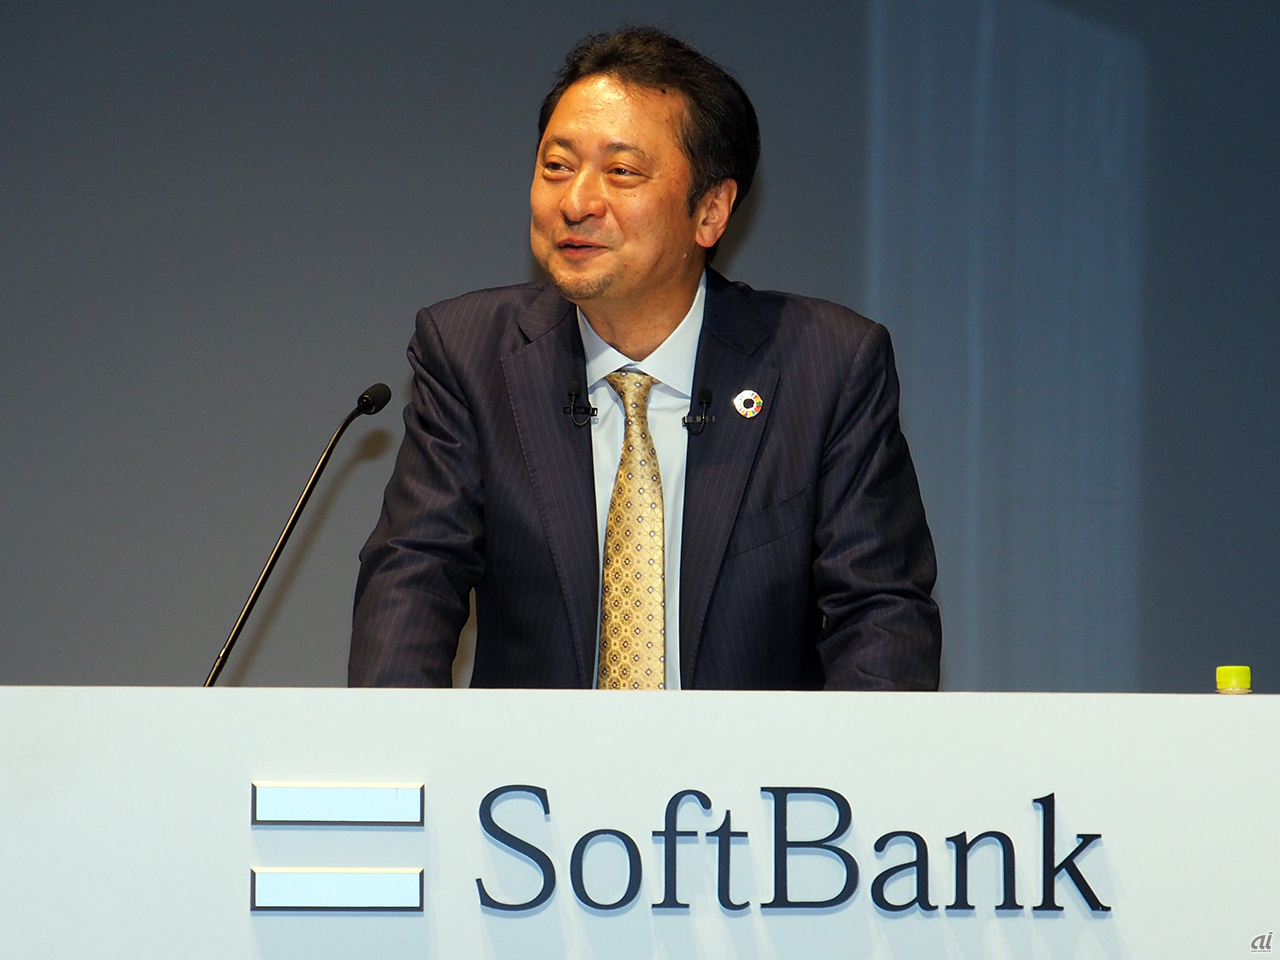 ソフトバンクの宮川氏は、2022年度も5Gの集中投資を続け、5Gエリアの面展開を一層加速する方針を示している